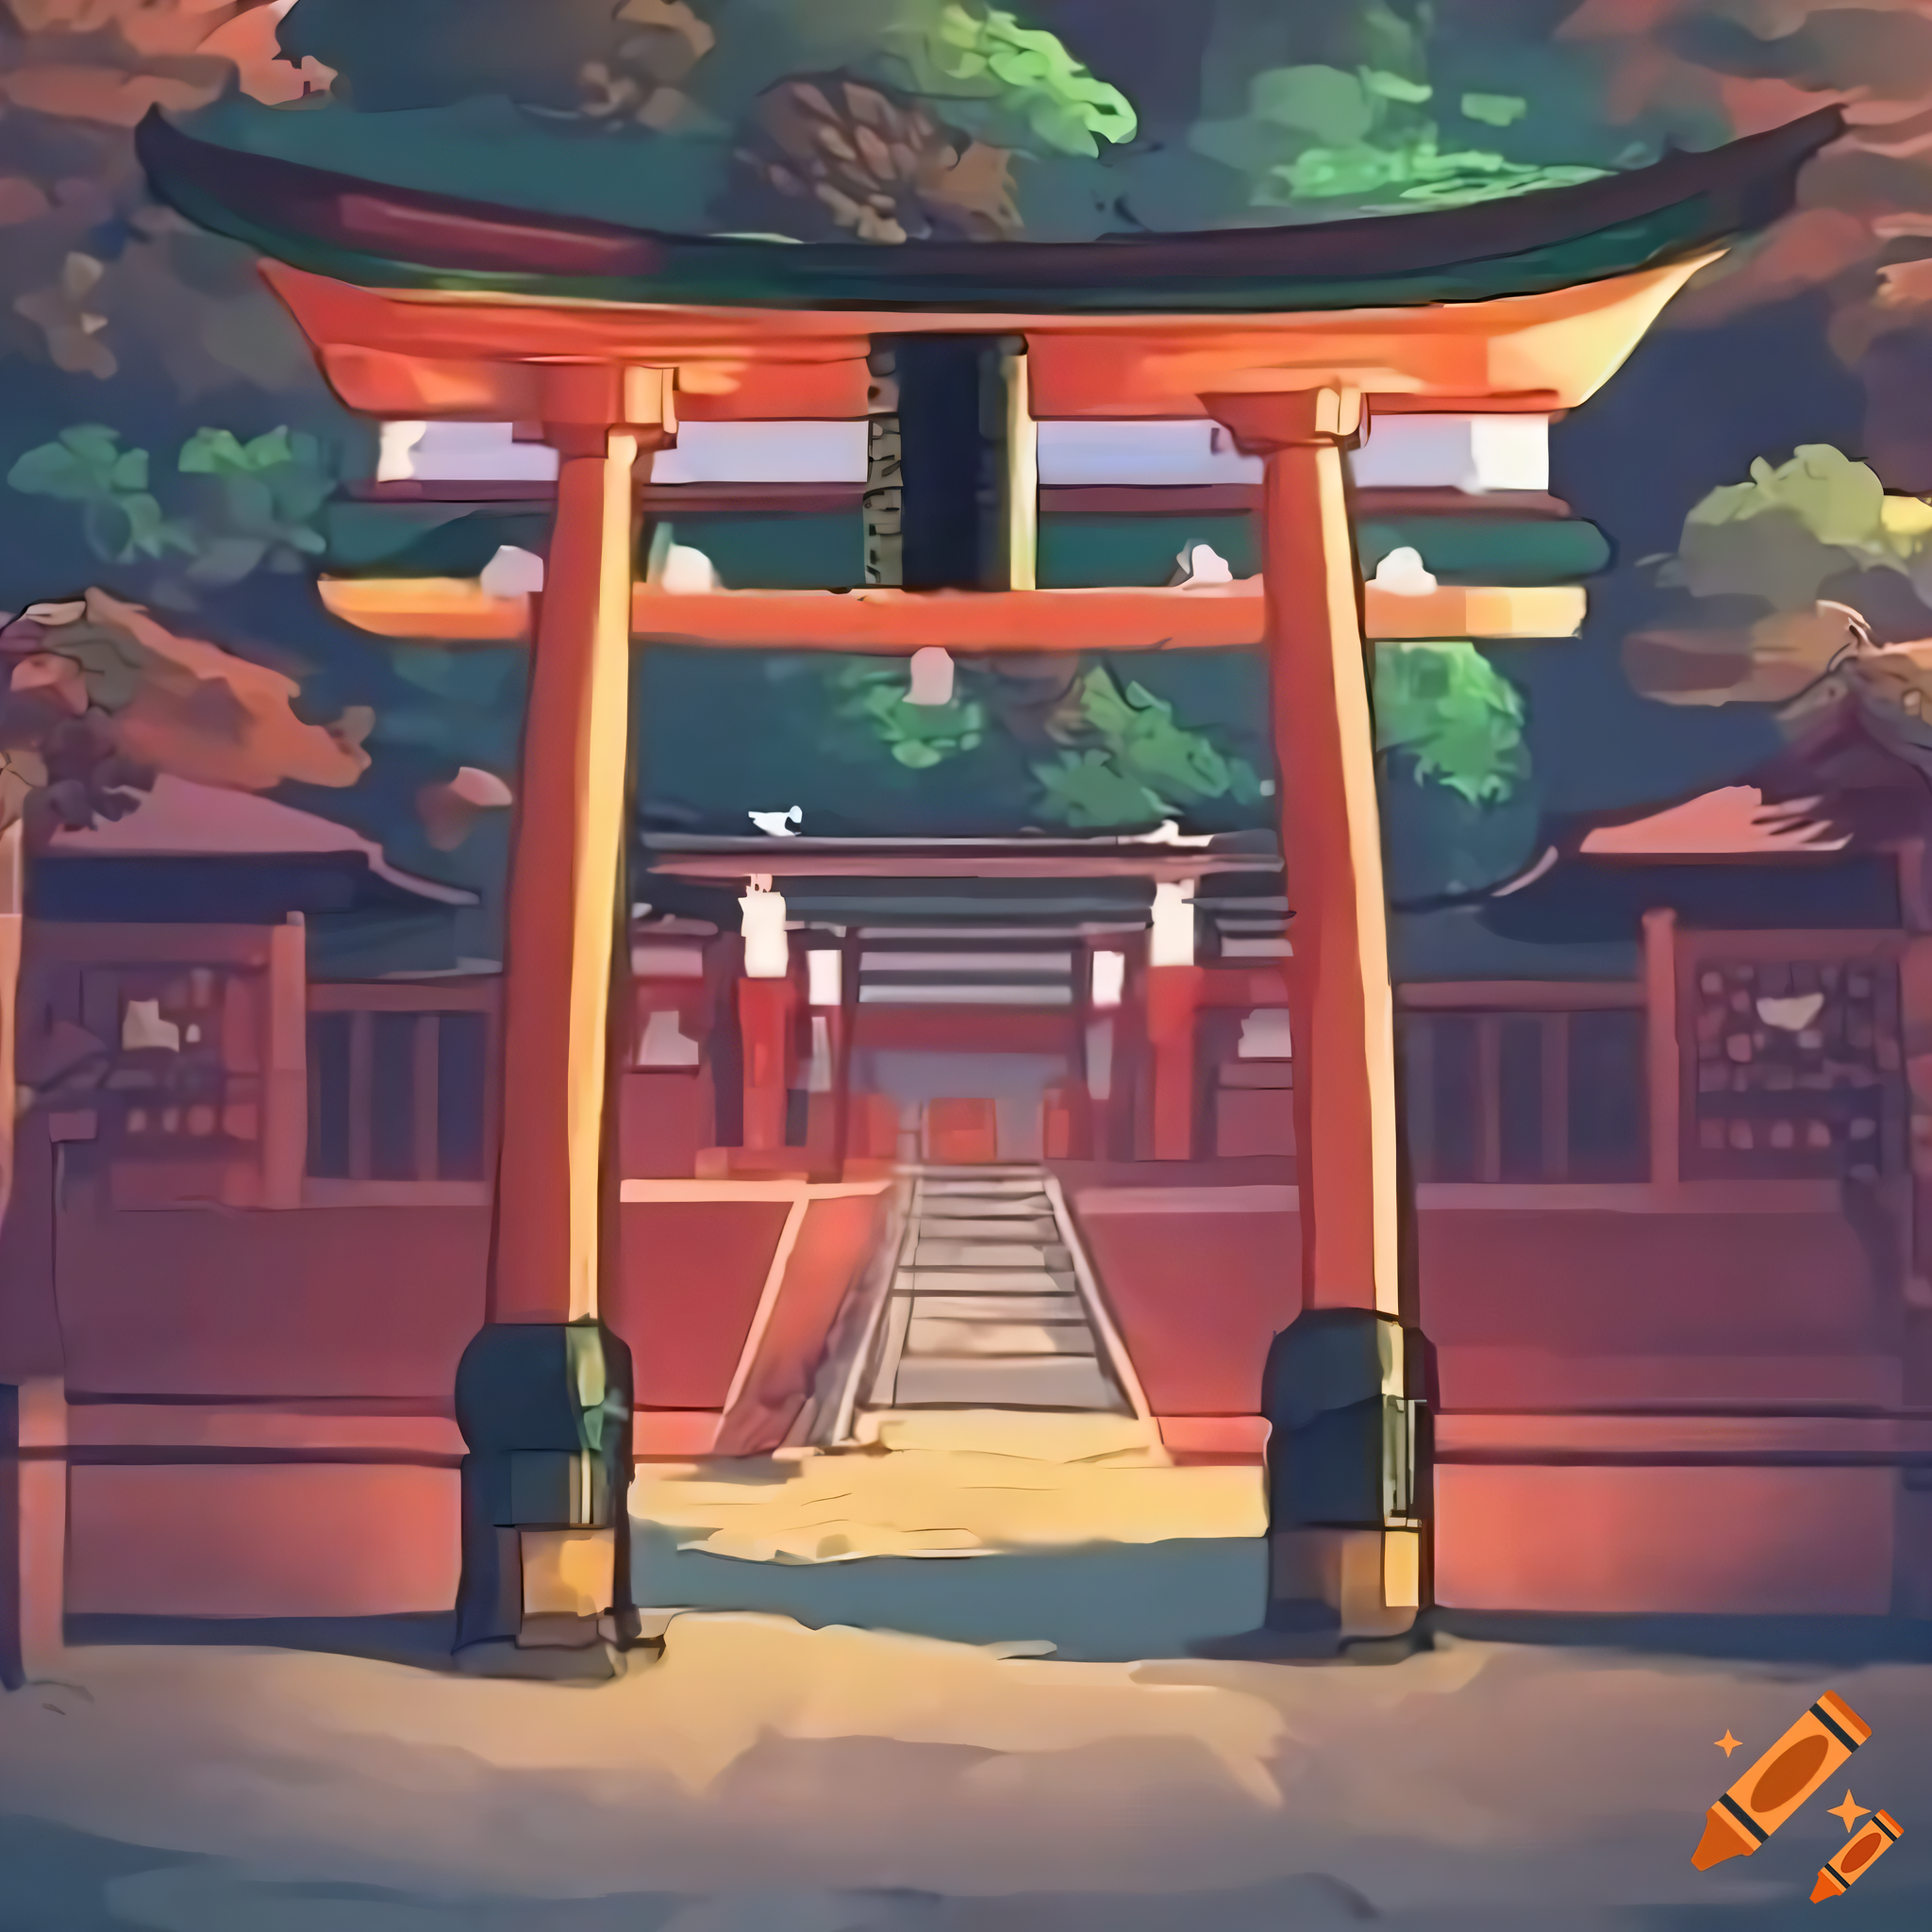 Japanese shrine, shinto shrine, torin gate, anime, wallpaper, red walls, slopped roof, shrine